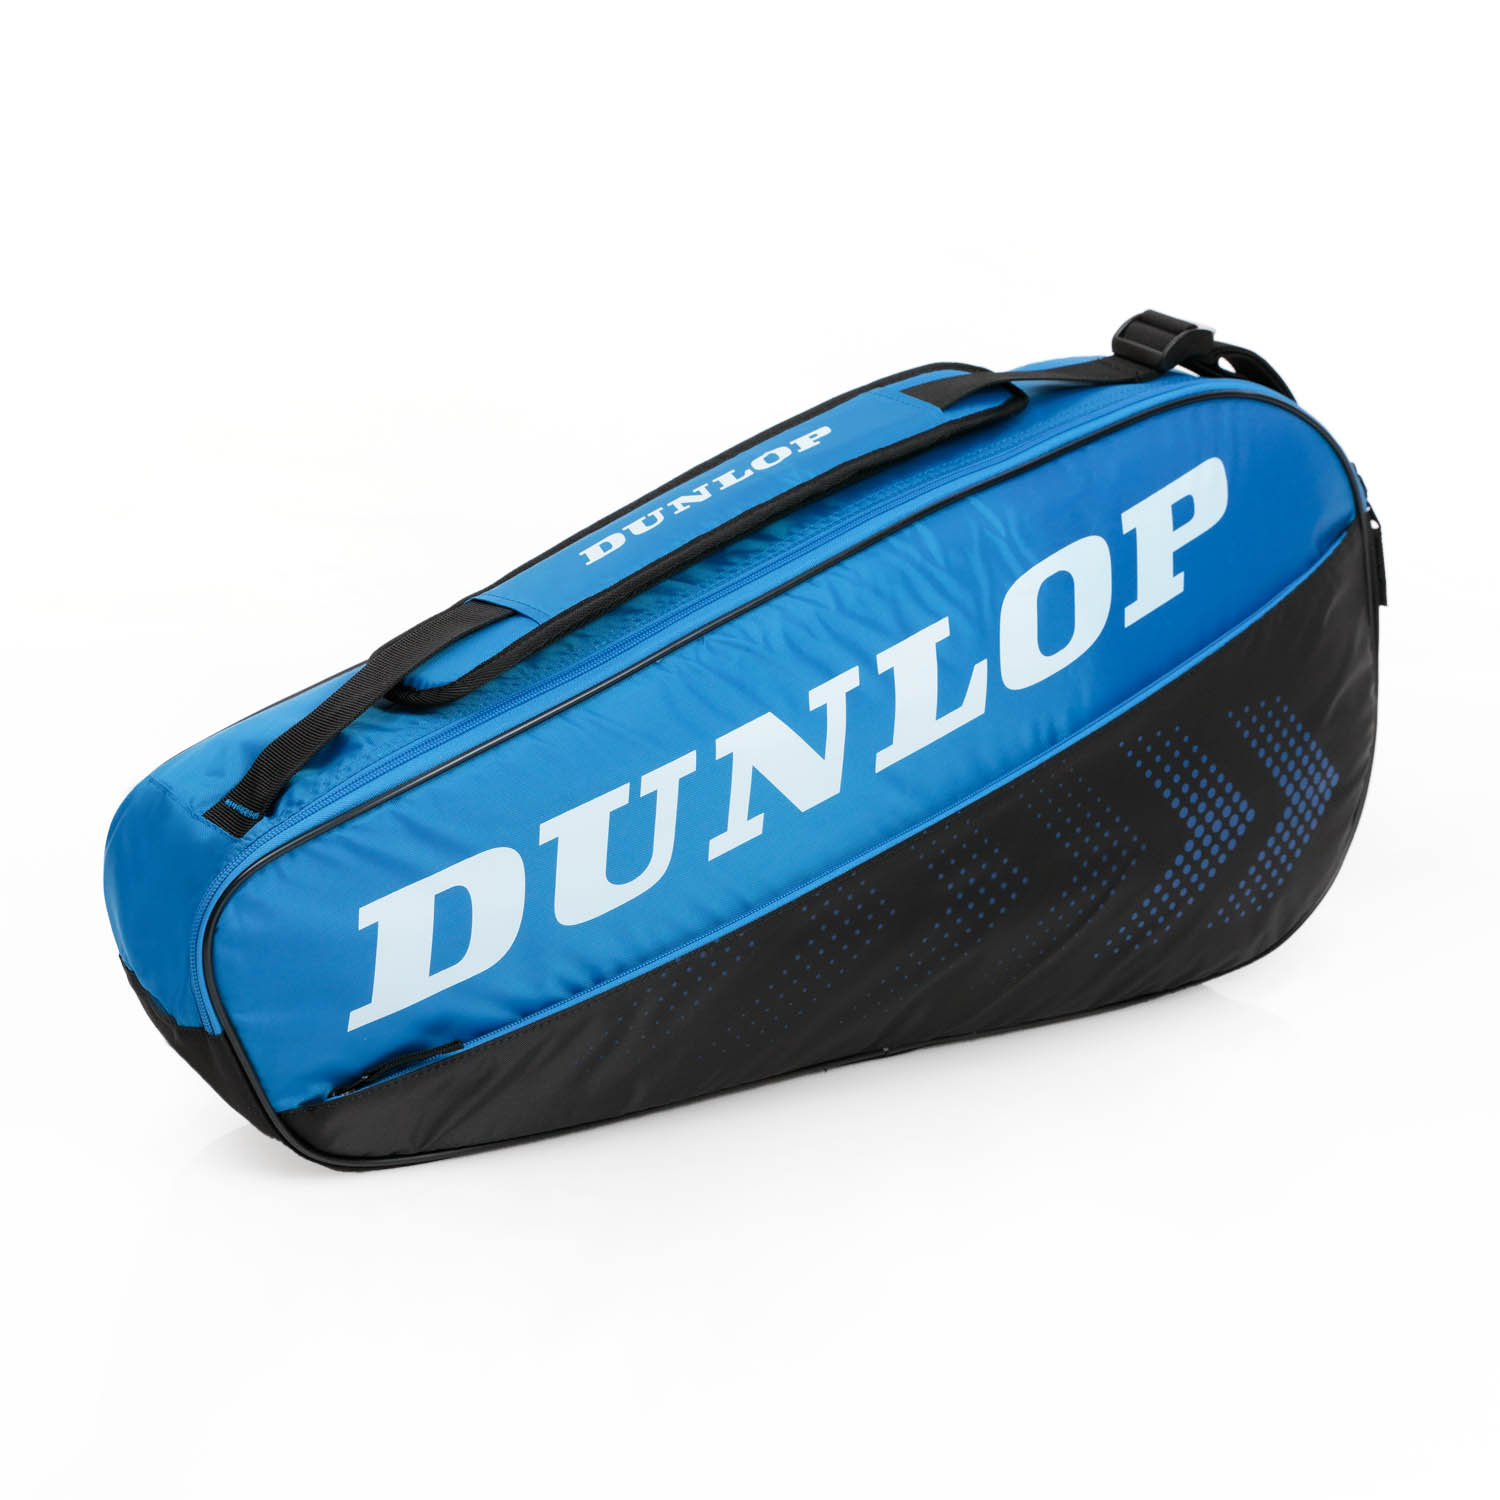 Dunlop CX Club x 3 Bag - Black/Blue